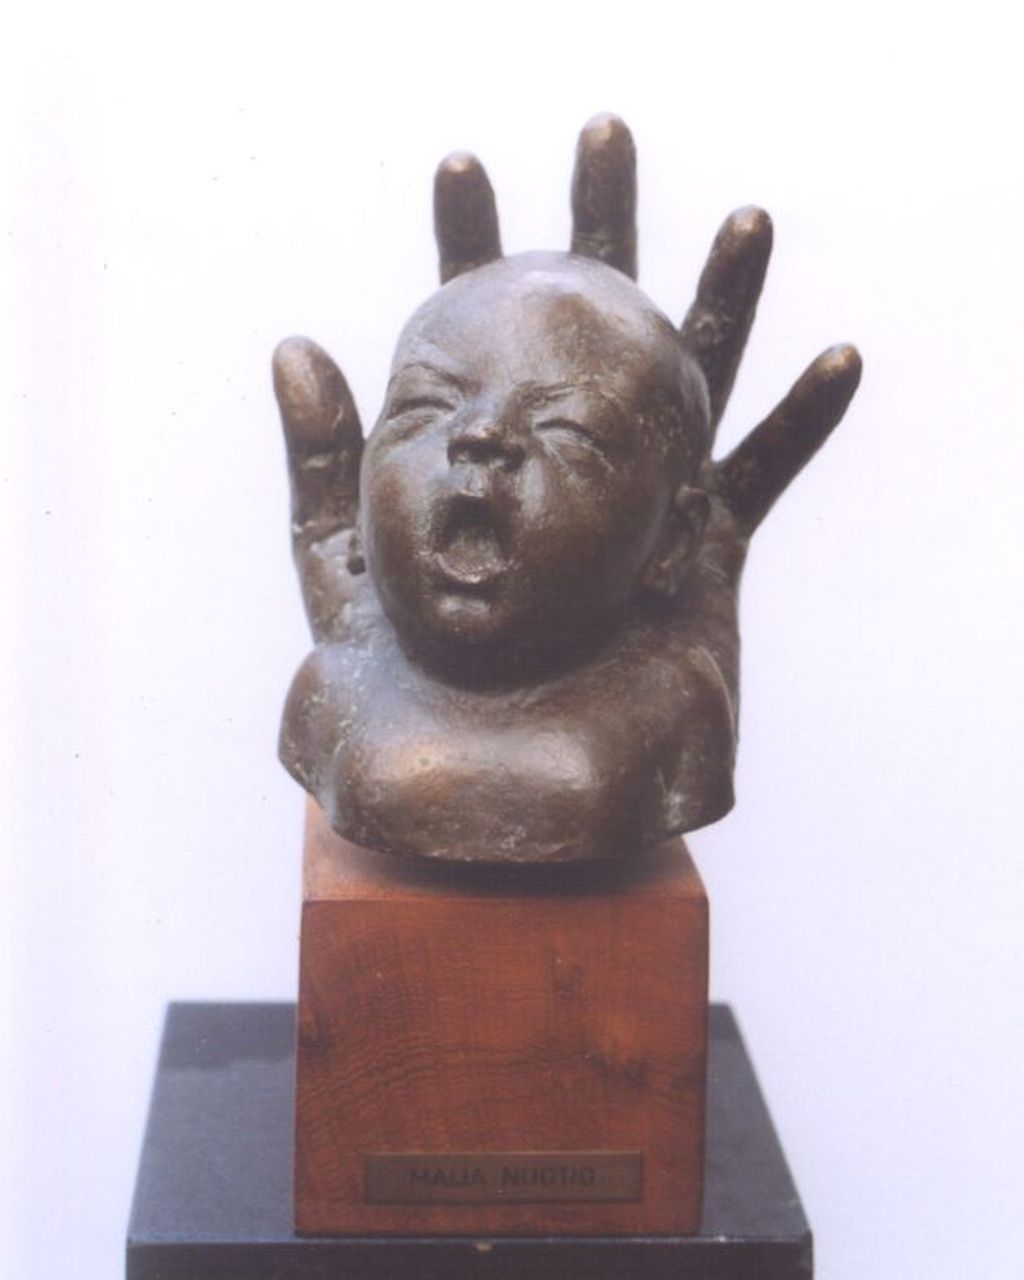 Nuotio M.H.K.  | 'Maija' Hilma Kaarina Nuotio, Babyhoofdje gevat in een hand, bronze 21.5 x 18.5 cm, gesigneerd op zijkant hand and gedateerd '74